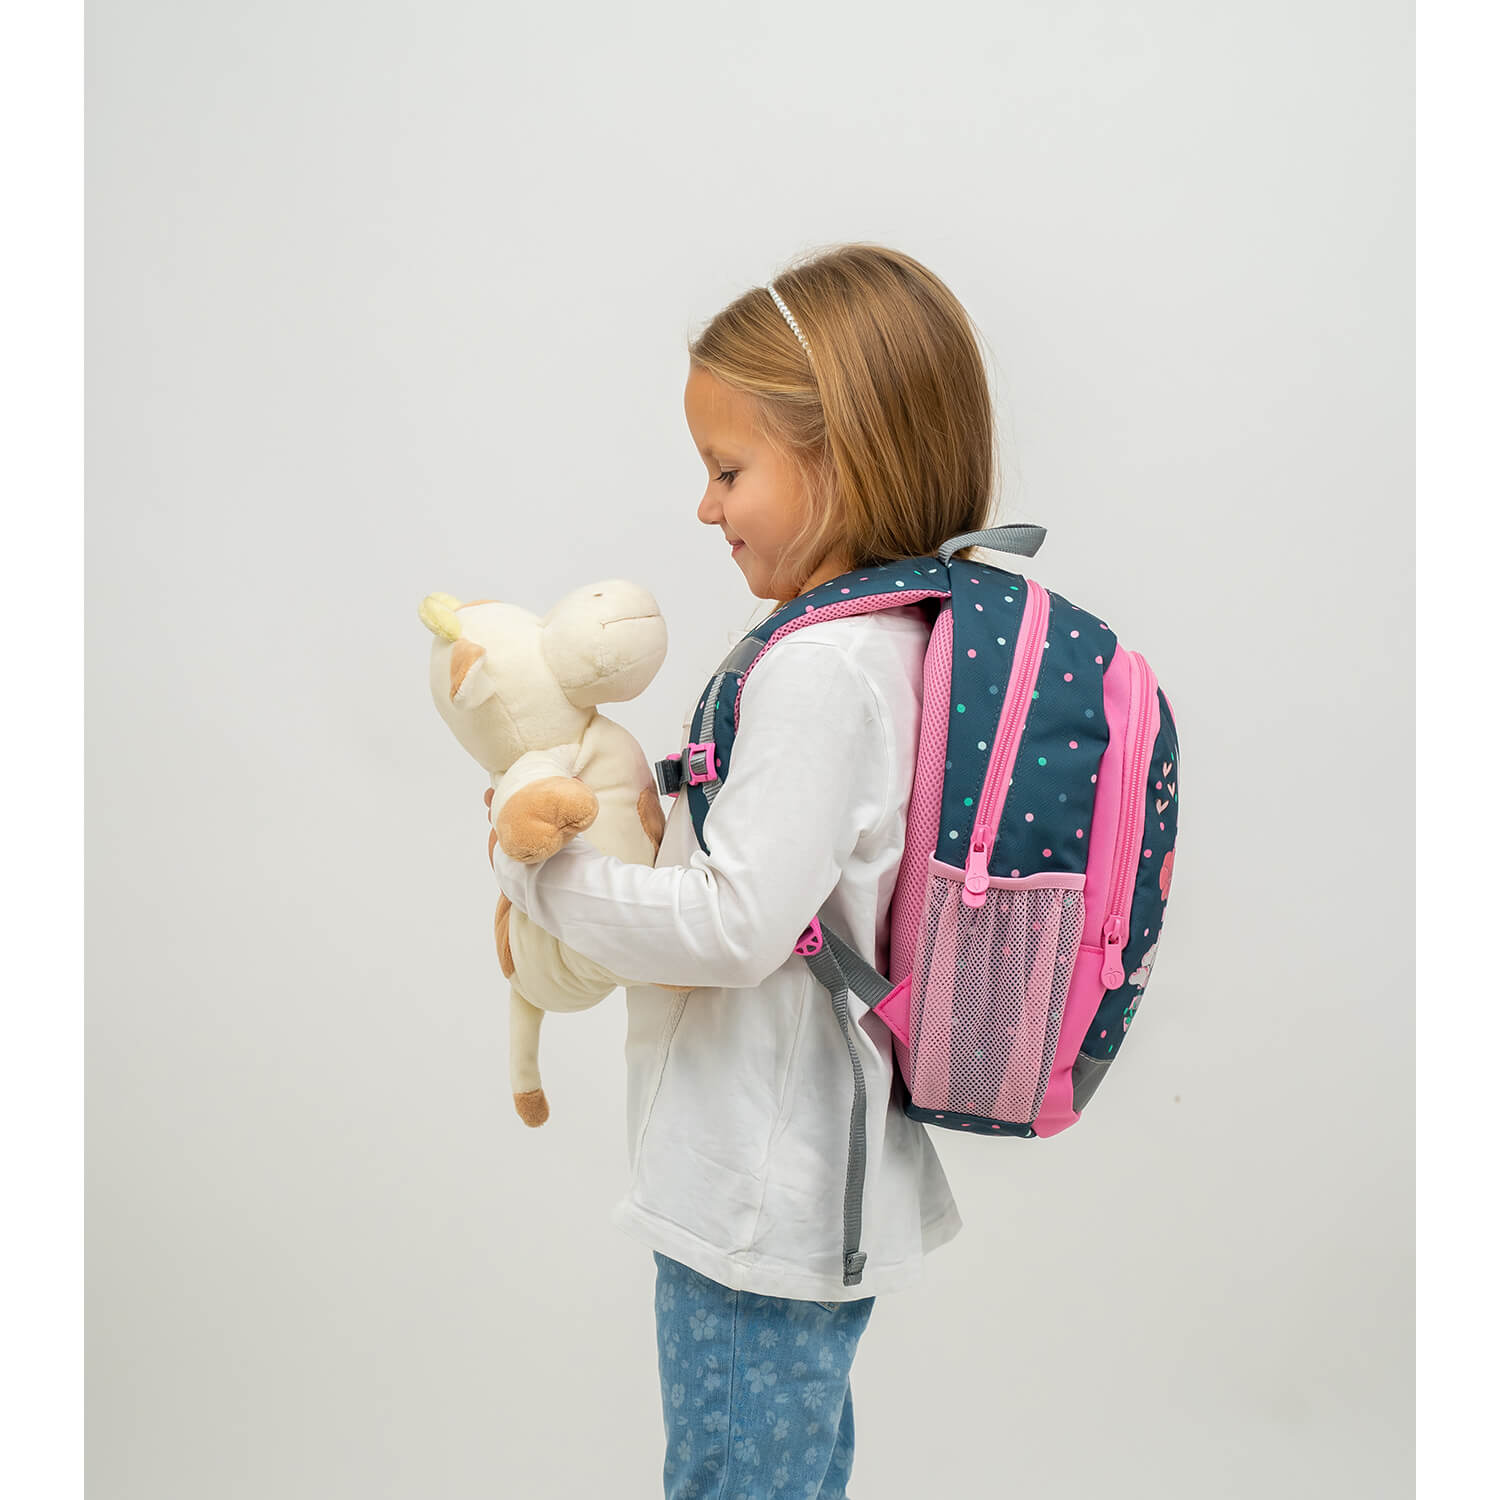 Kiddy Plus Bunny Kindergarten Bag